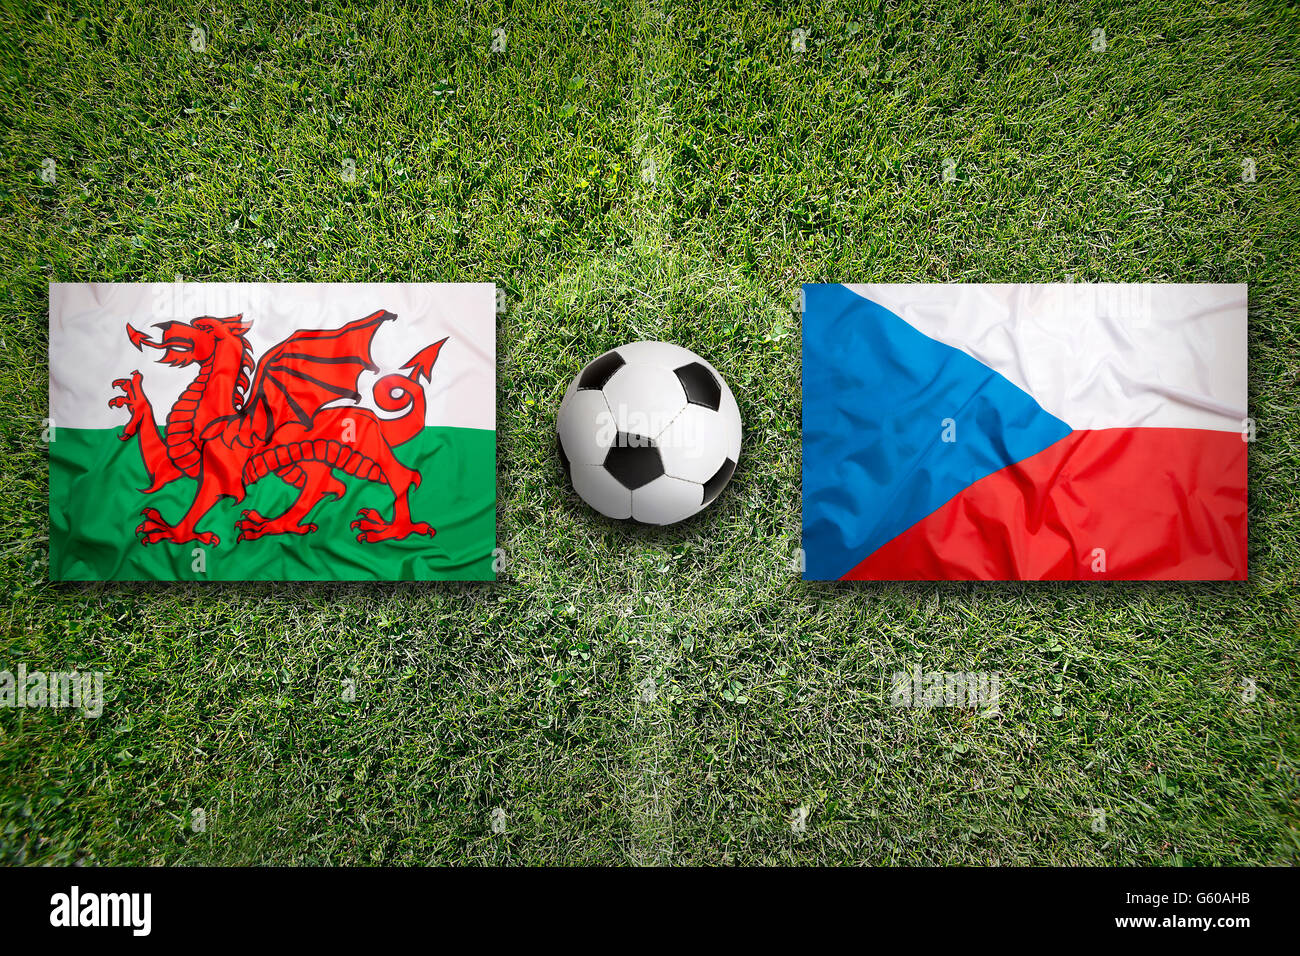 Wales vs. Czech Republic flags on green soccer field Stock Photo